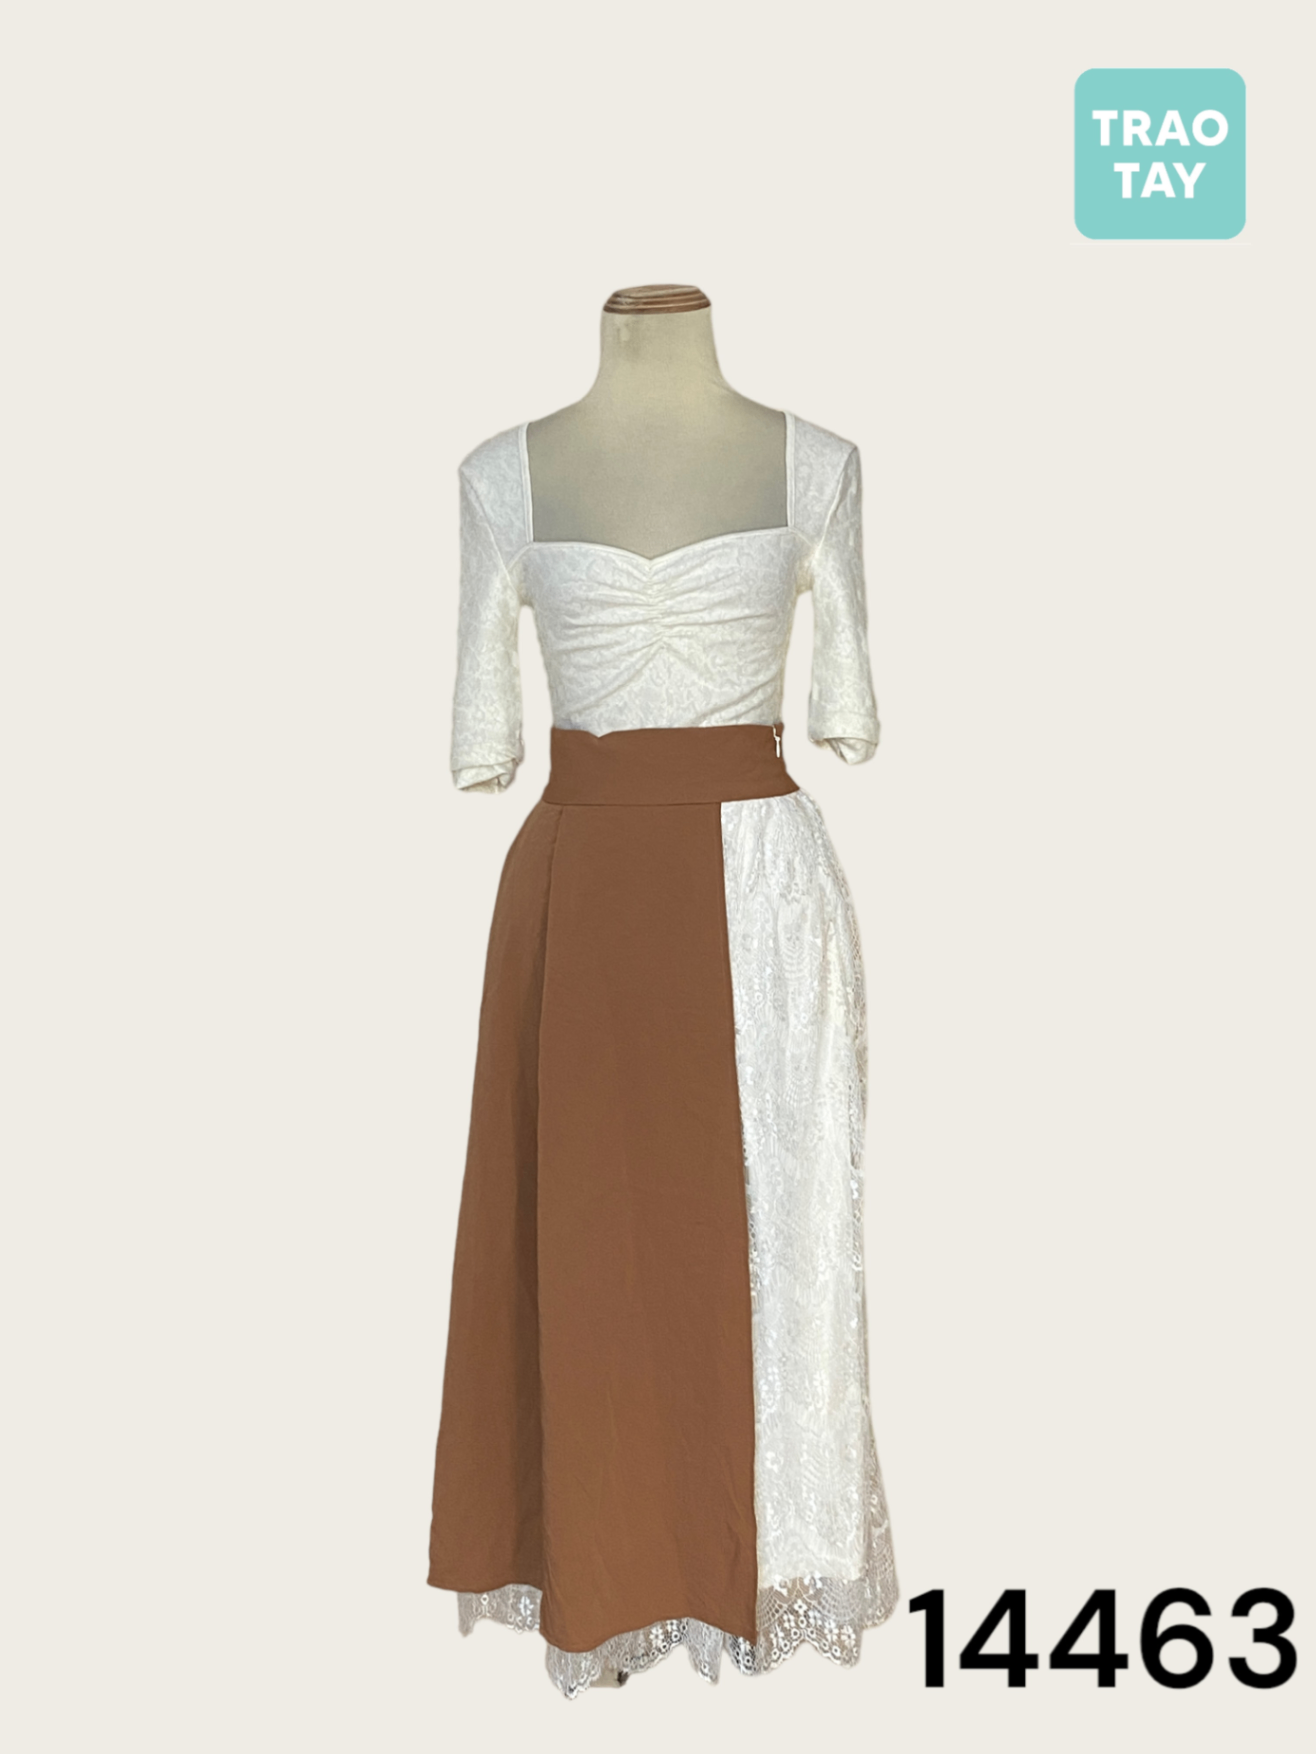 Hit item] váy maxi 2 dây trắng bèo phối ren bi Mới 100%, giá: 240.000đ,  gọi: 0908088166, Quận 8 - Hồ Chí Minh, id-59821100